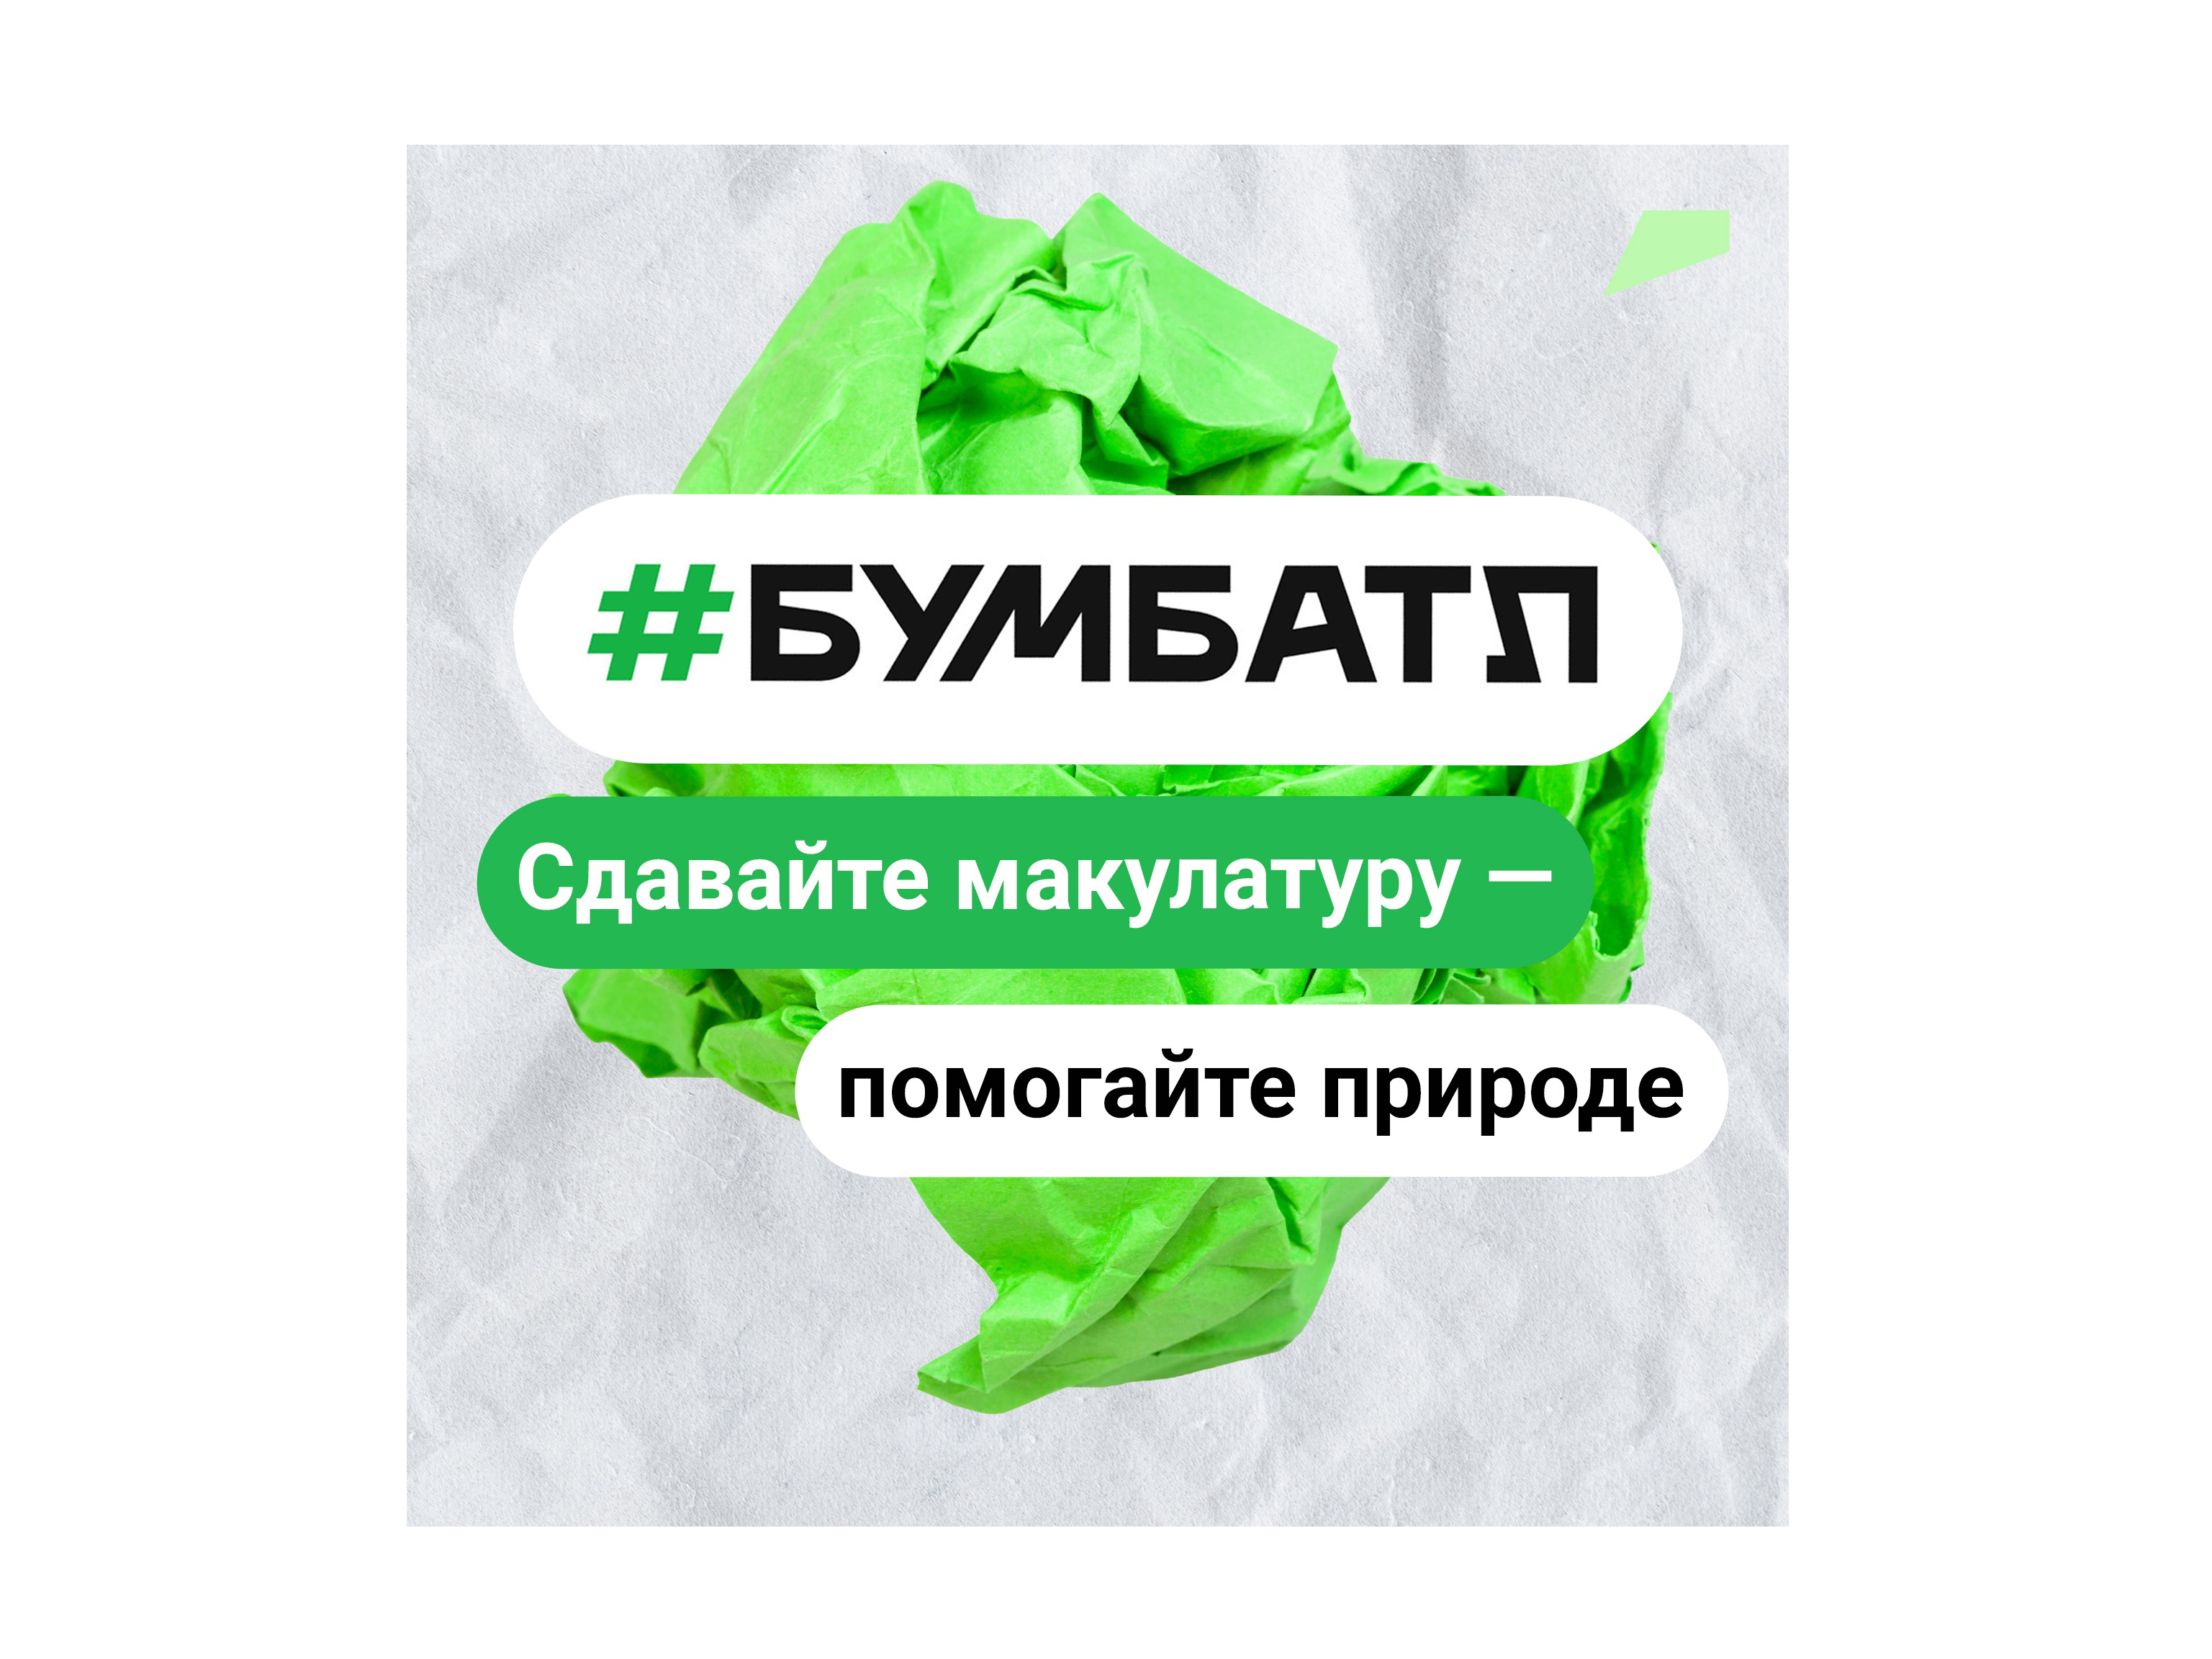 Белгородская область вошла в тройку лидеров 4-го сезона крупнейшей в России акции по сбору макулатуры «БумБатл».